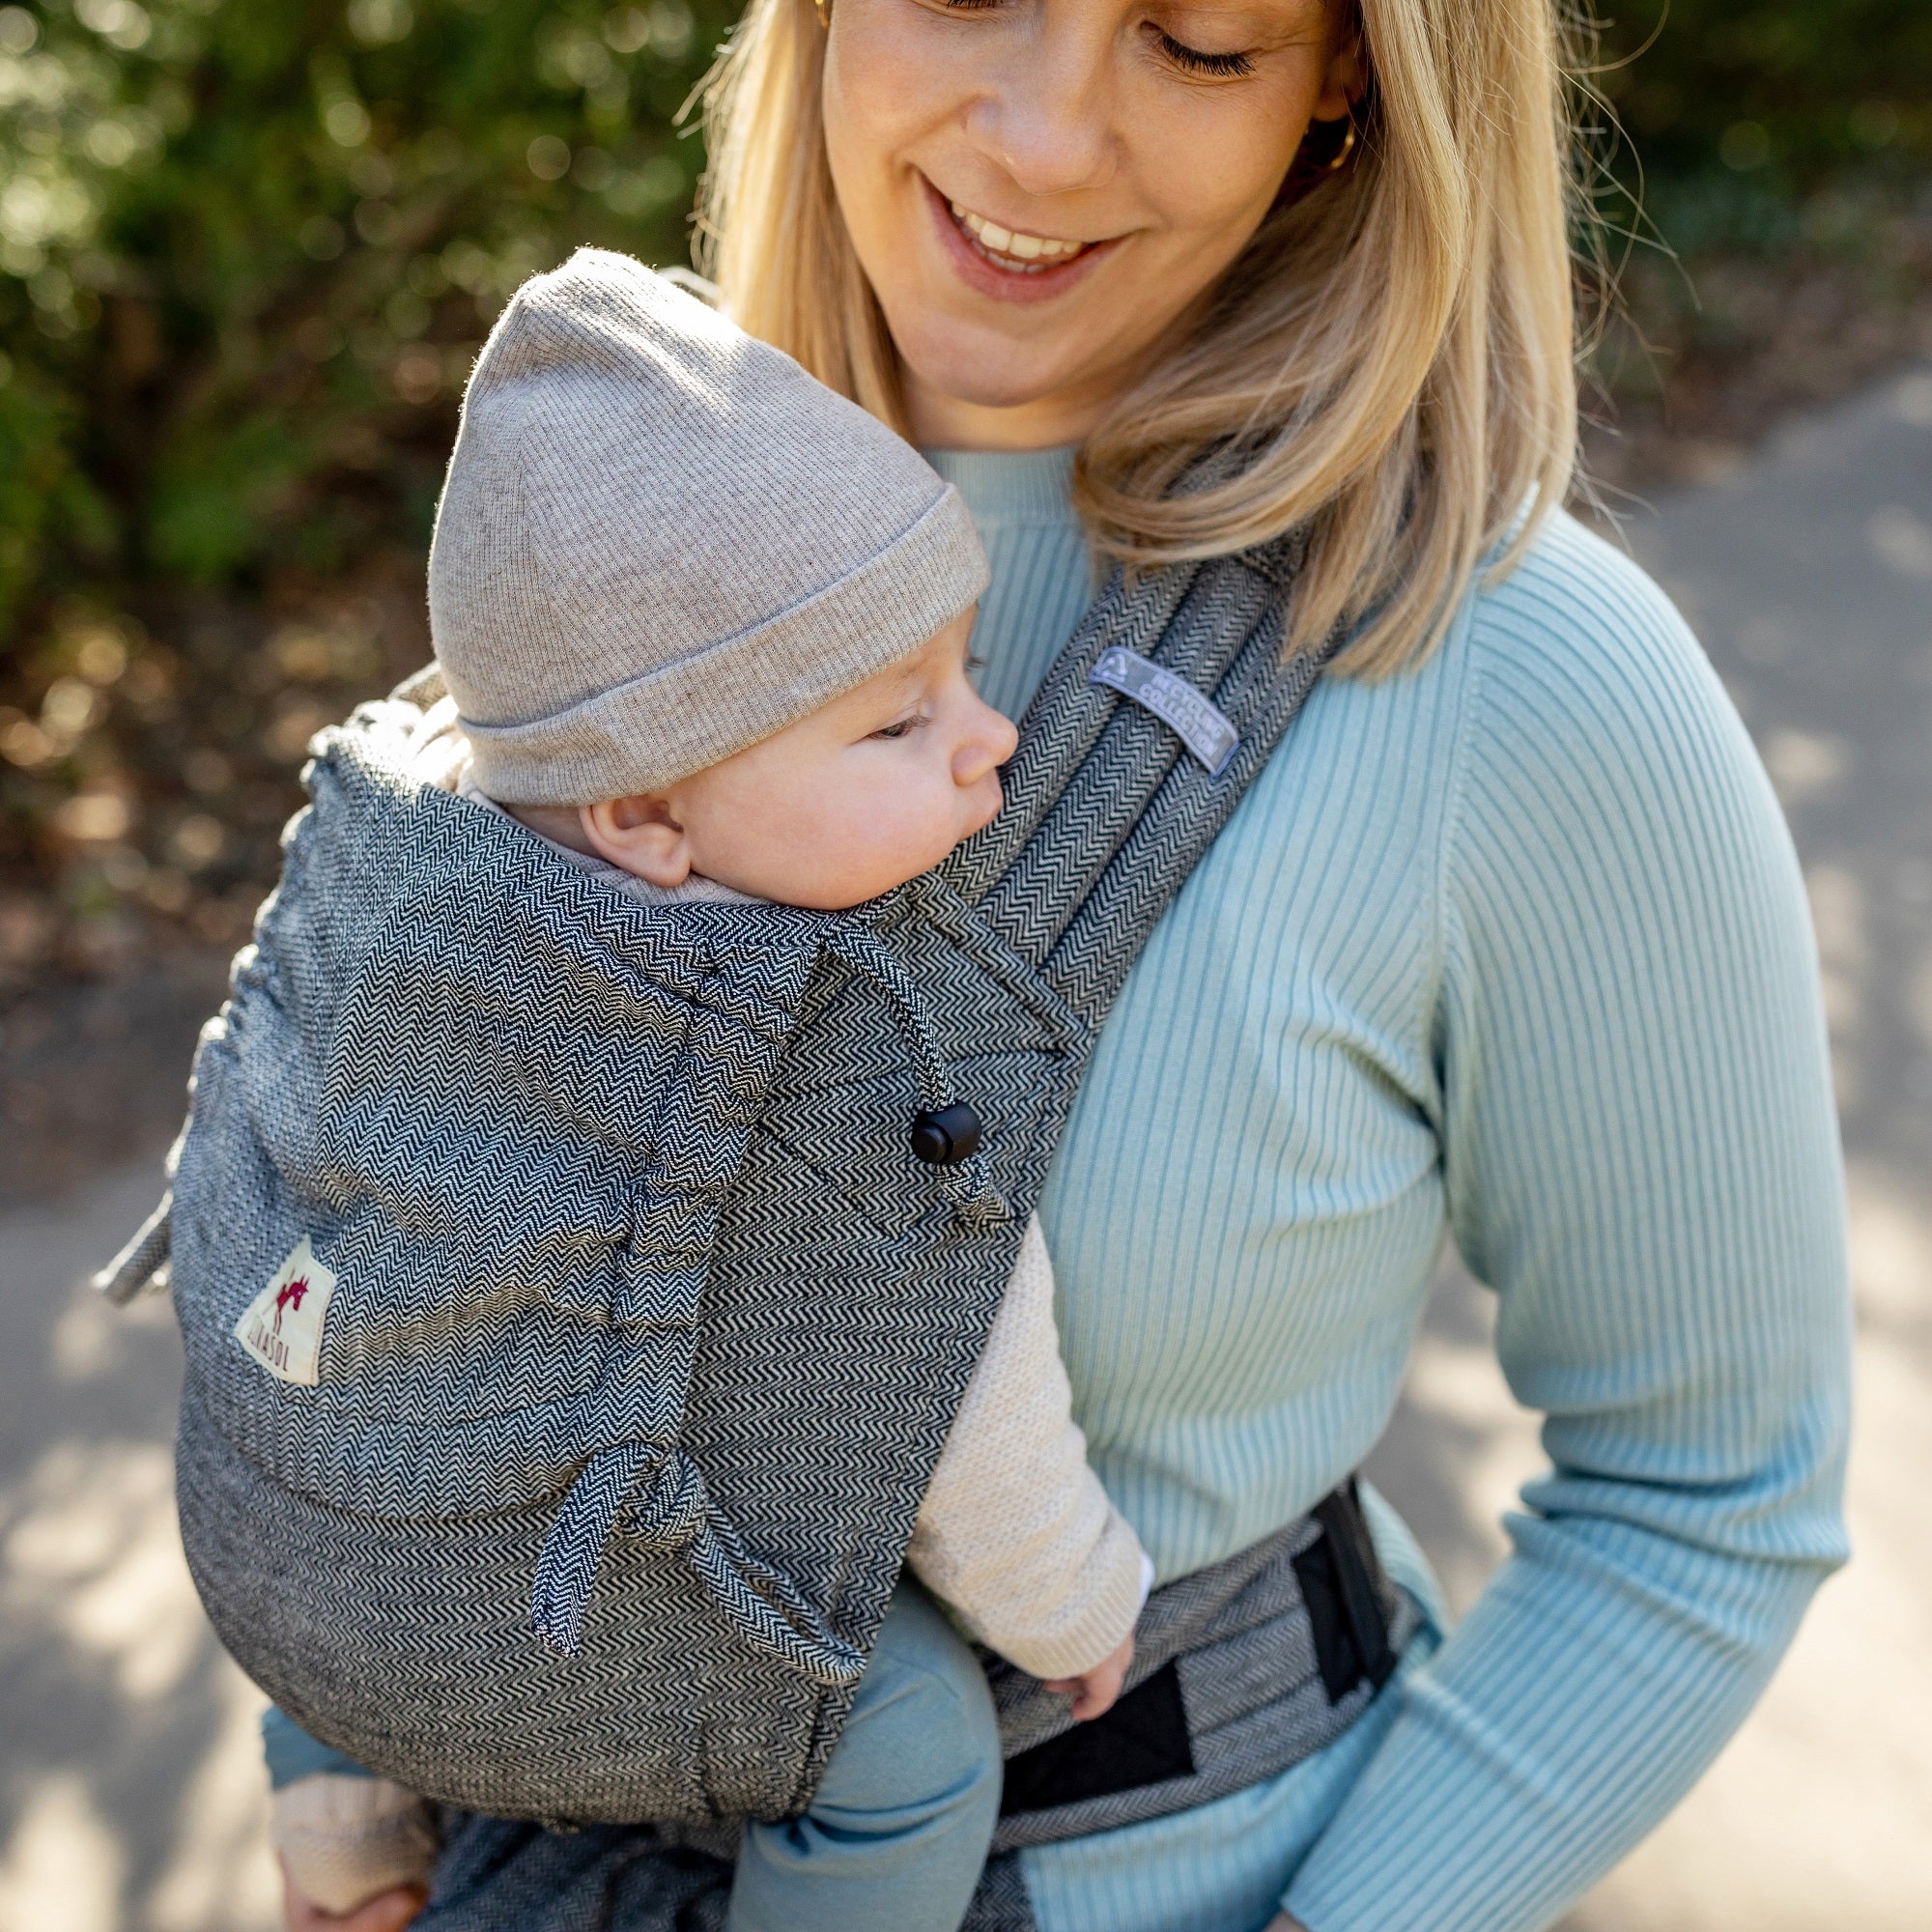 Babytrage Tweed Tragebild Mysol mit süßem Baby